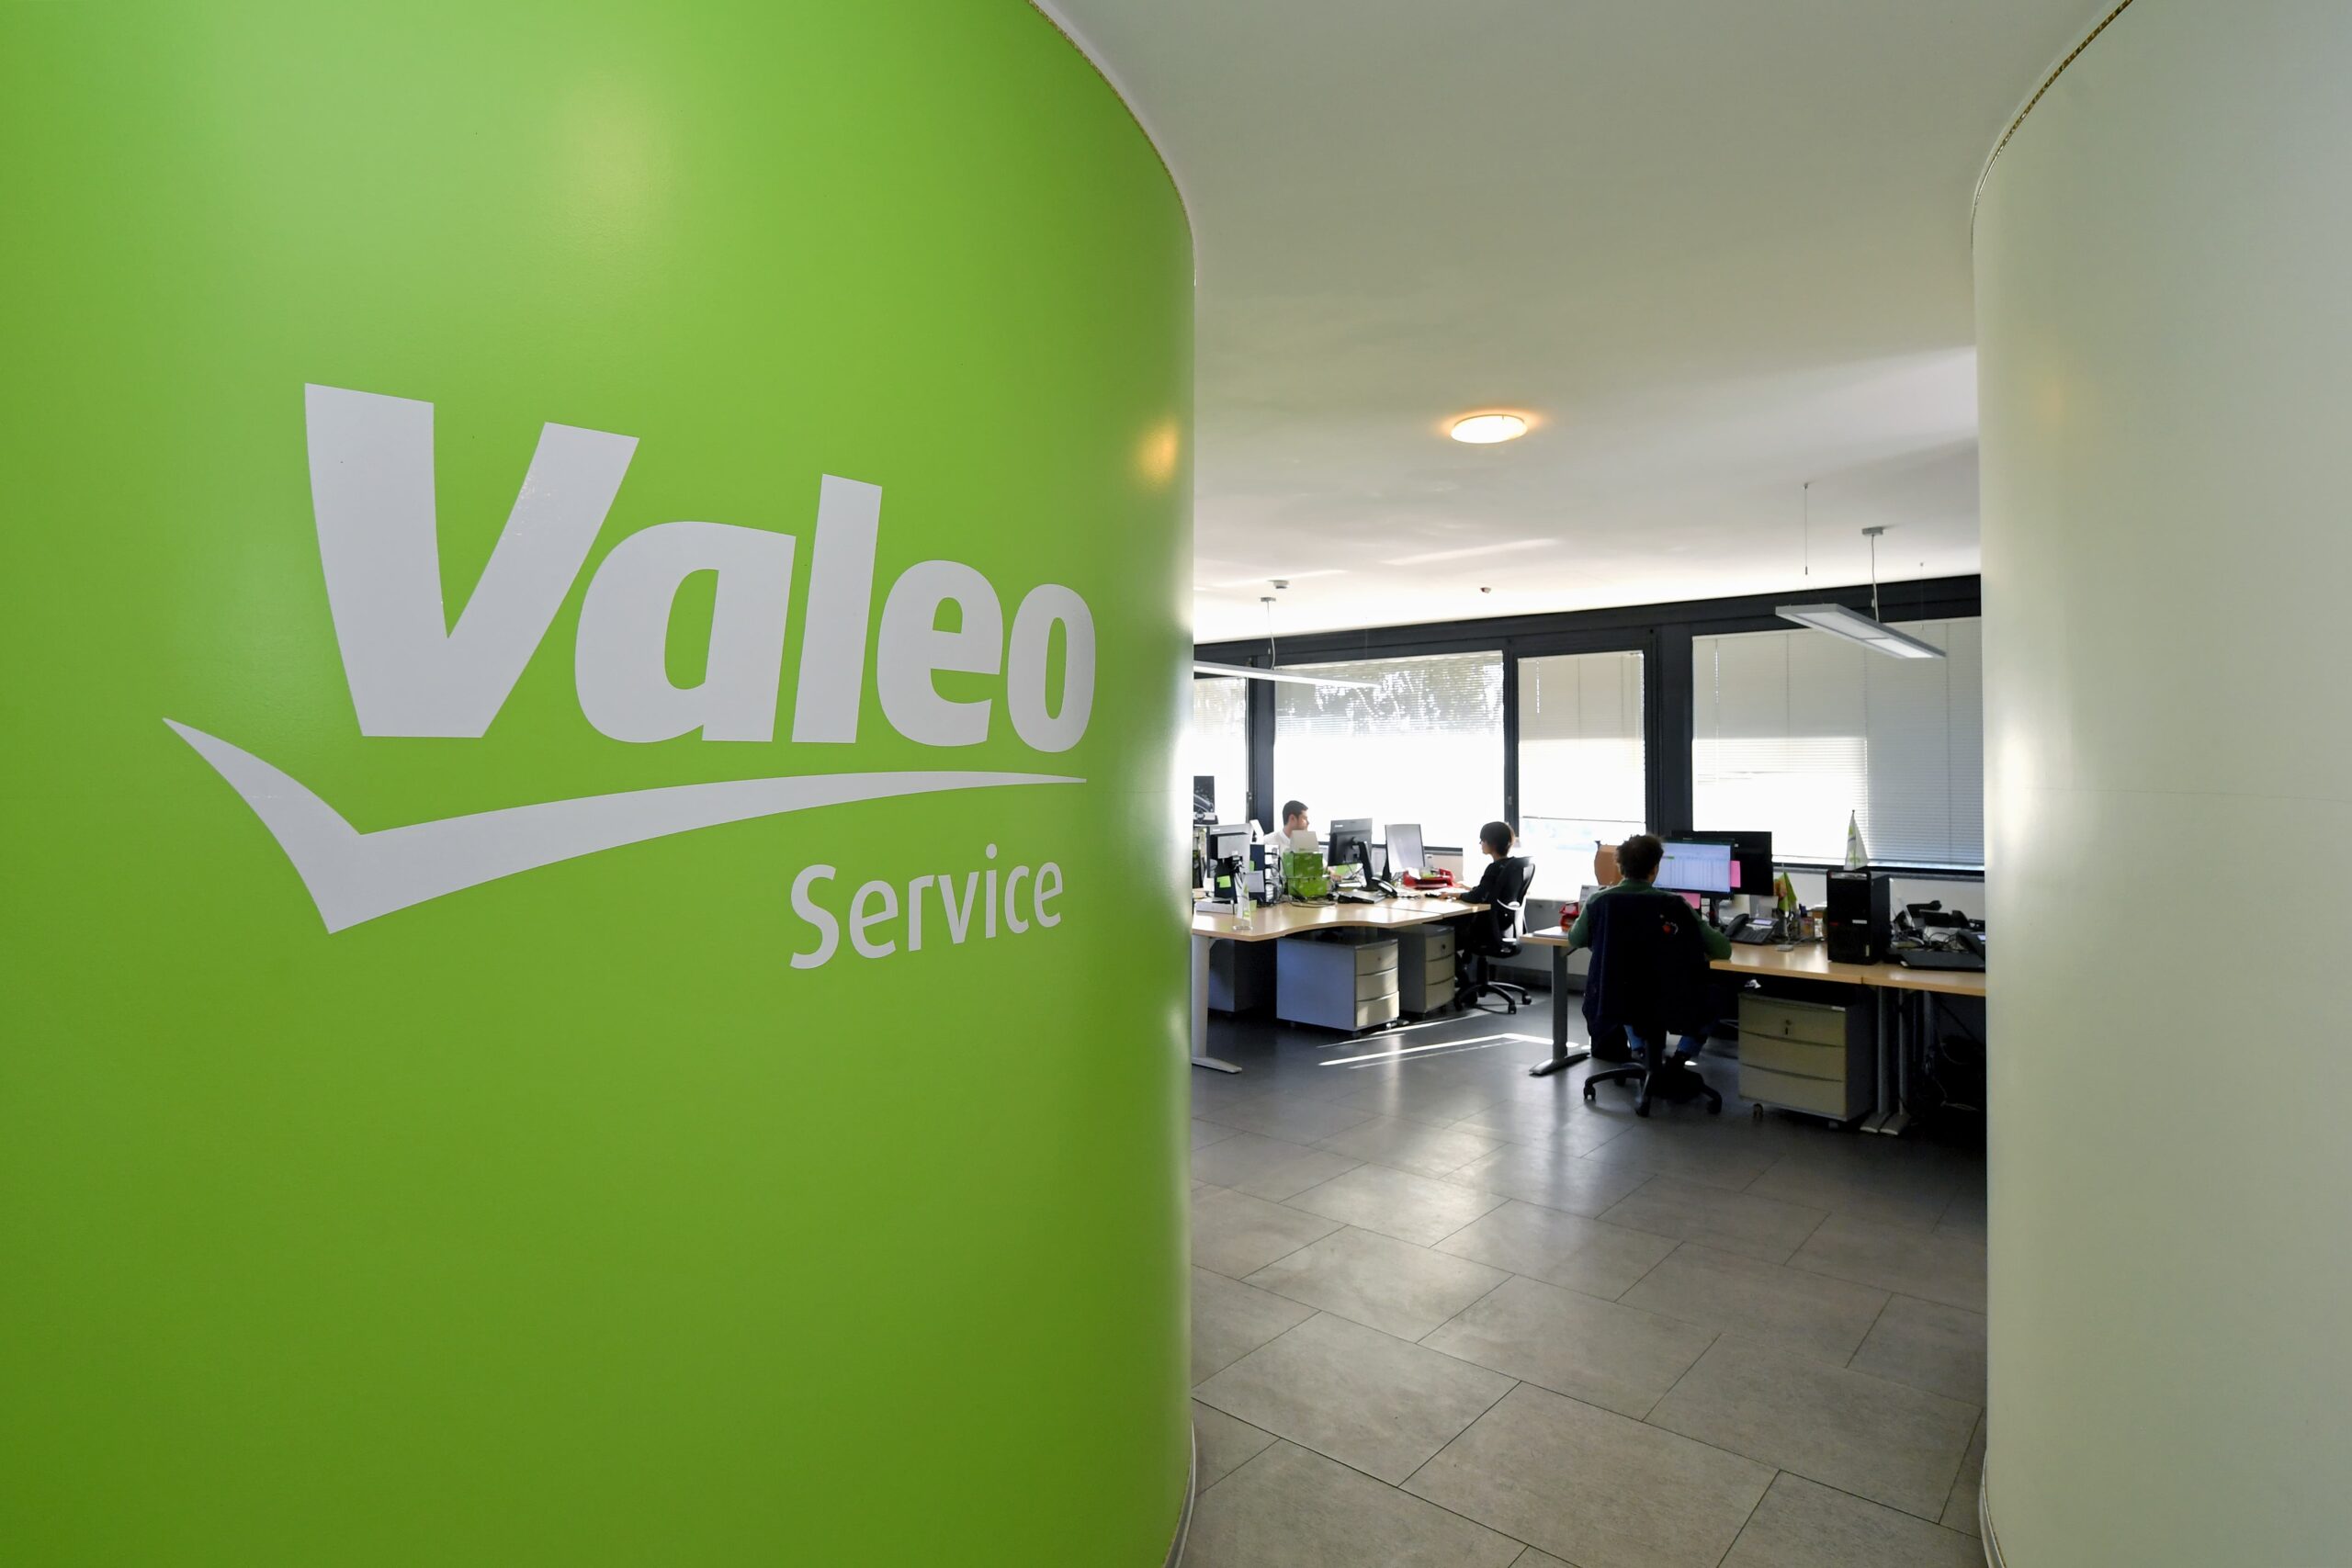 Valeo Service office in Santena